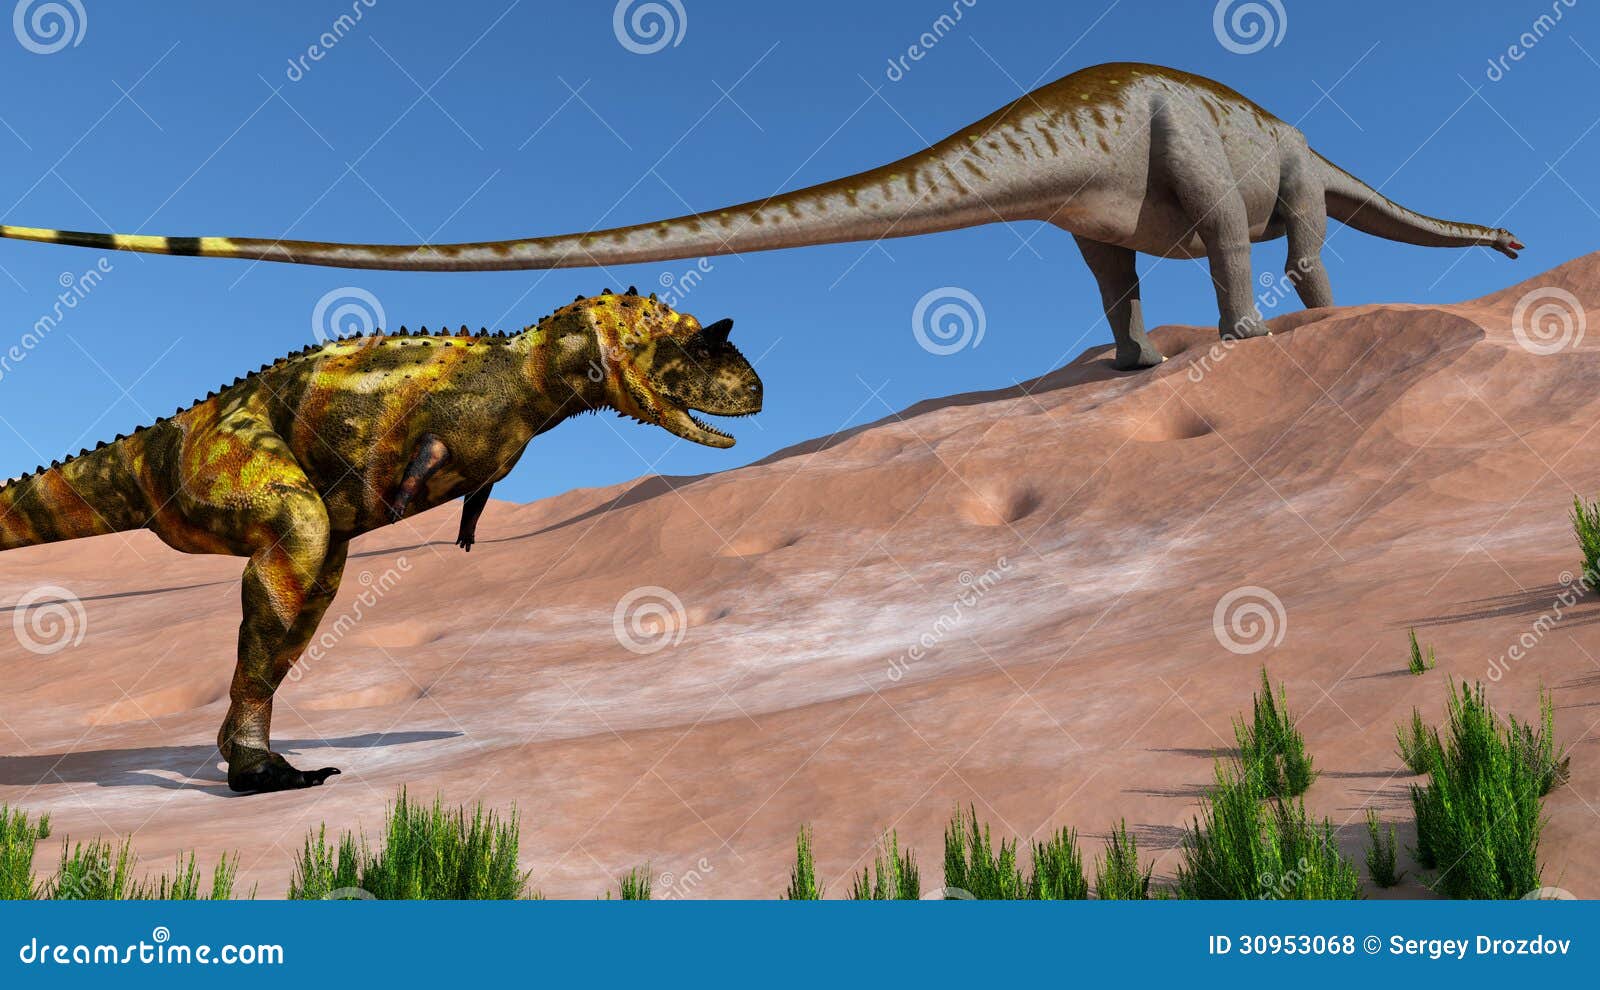 predatory dinosaur